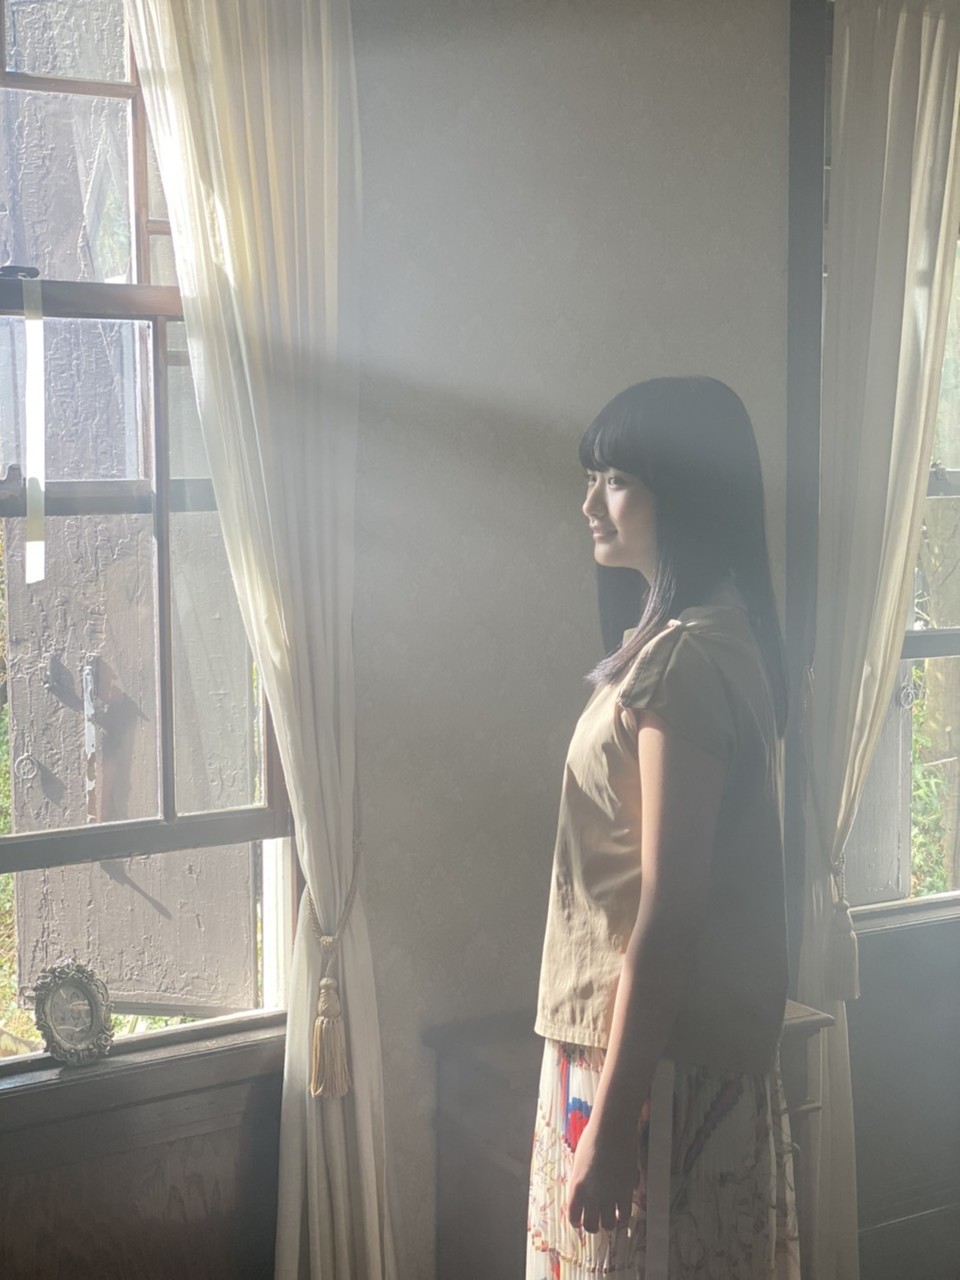 Yamasaki Ten : Keyakizaka46 | 山﨑天 : 欅坂46